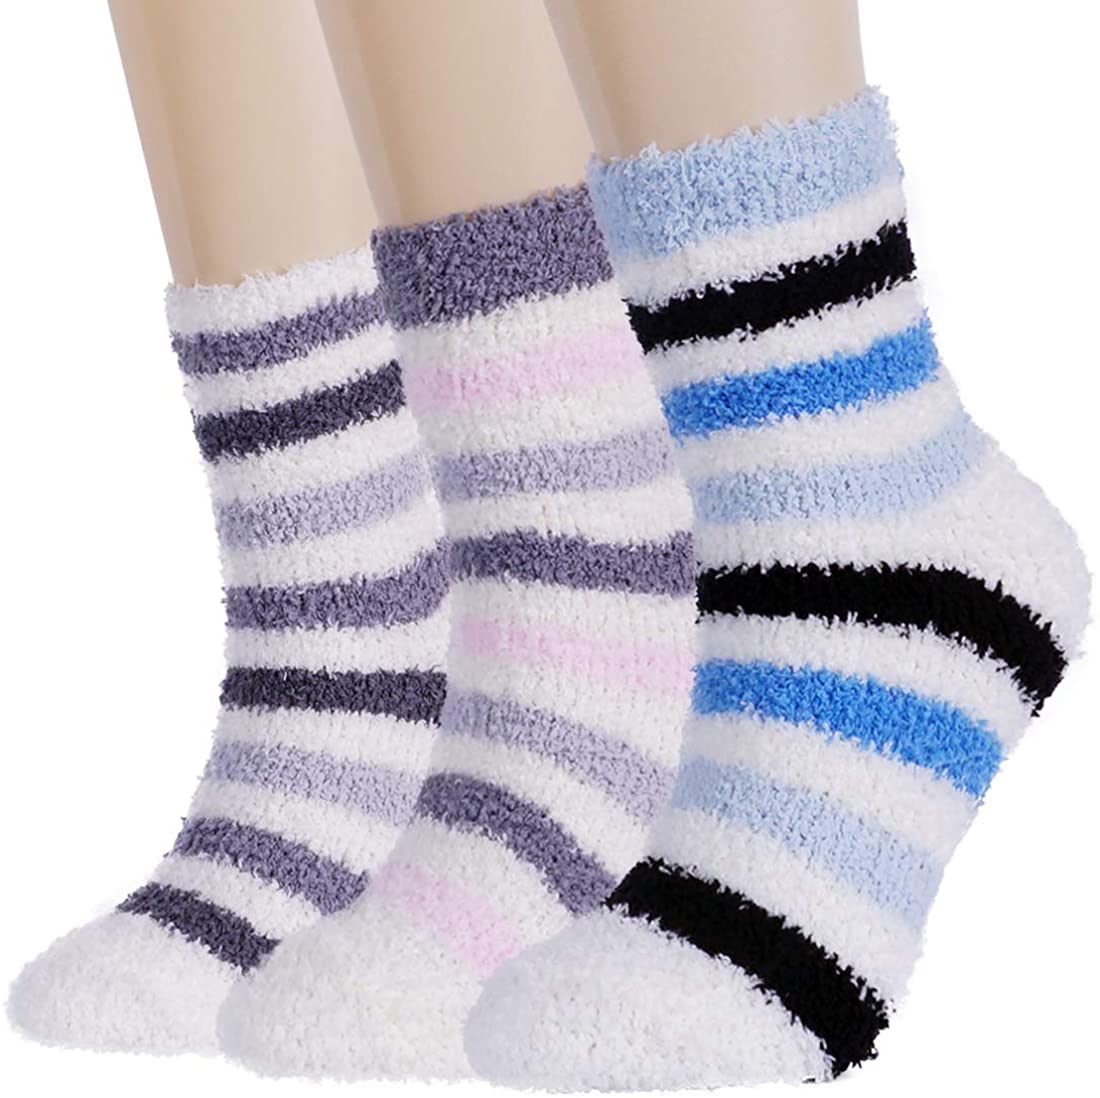 Retro Unisex Slipper Sock Available in 8 Colours! 5 Crew Christmas Slipper Socks Wool Fleece Slipper Socks Purple and White Gift Highest Quality Warm Winter 2 Layer Socks